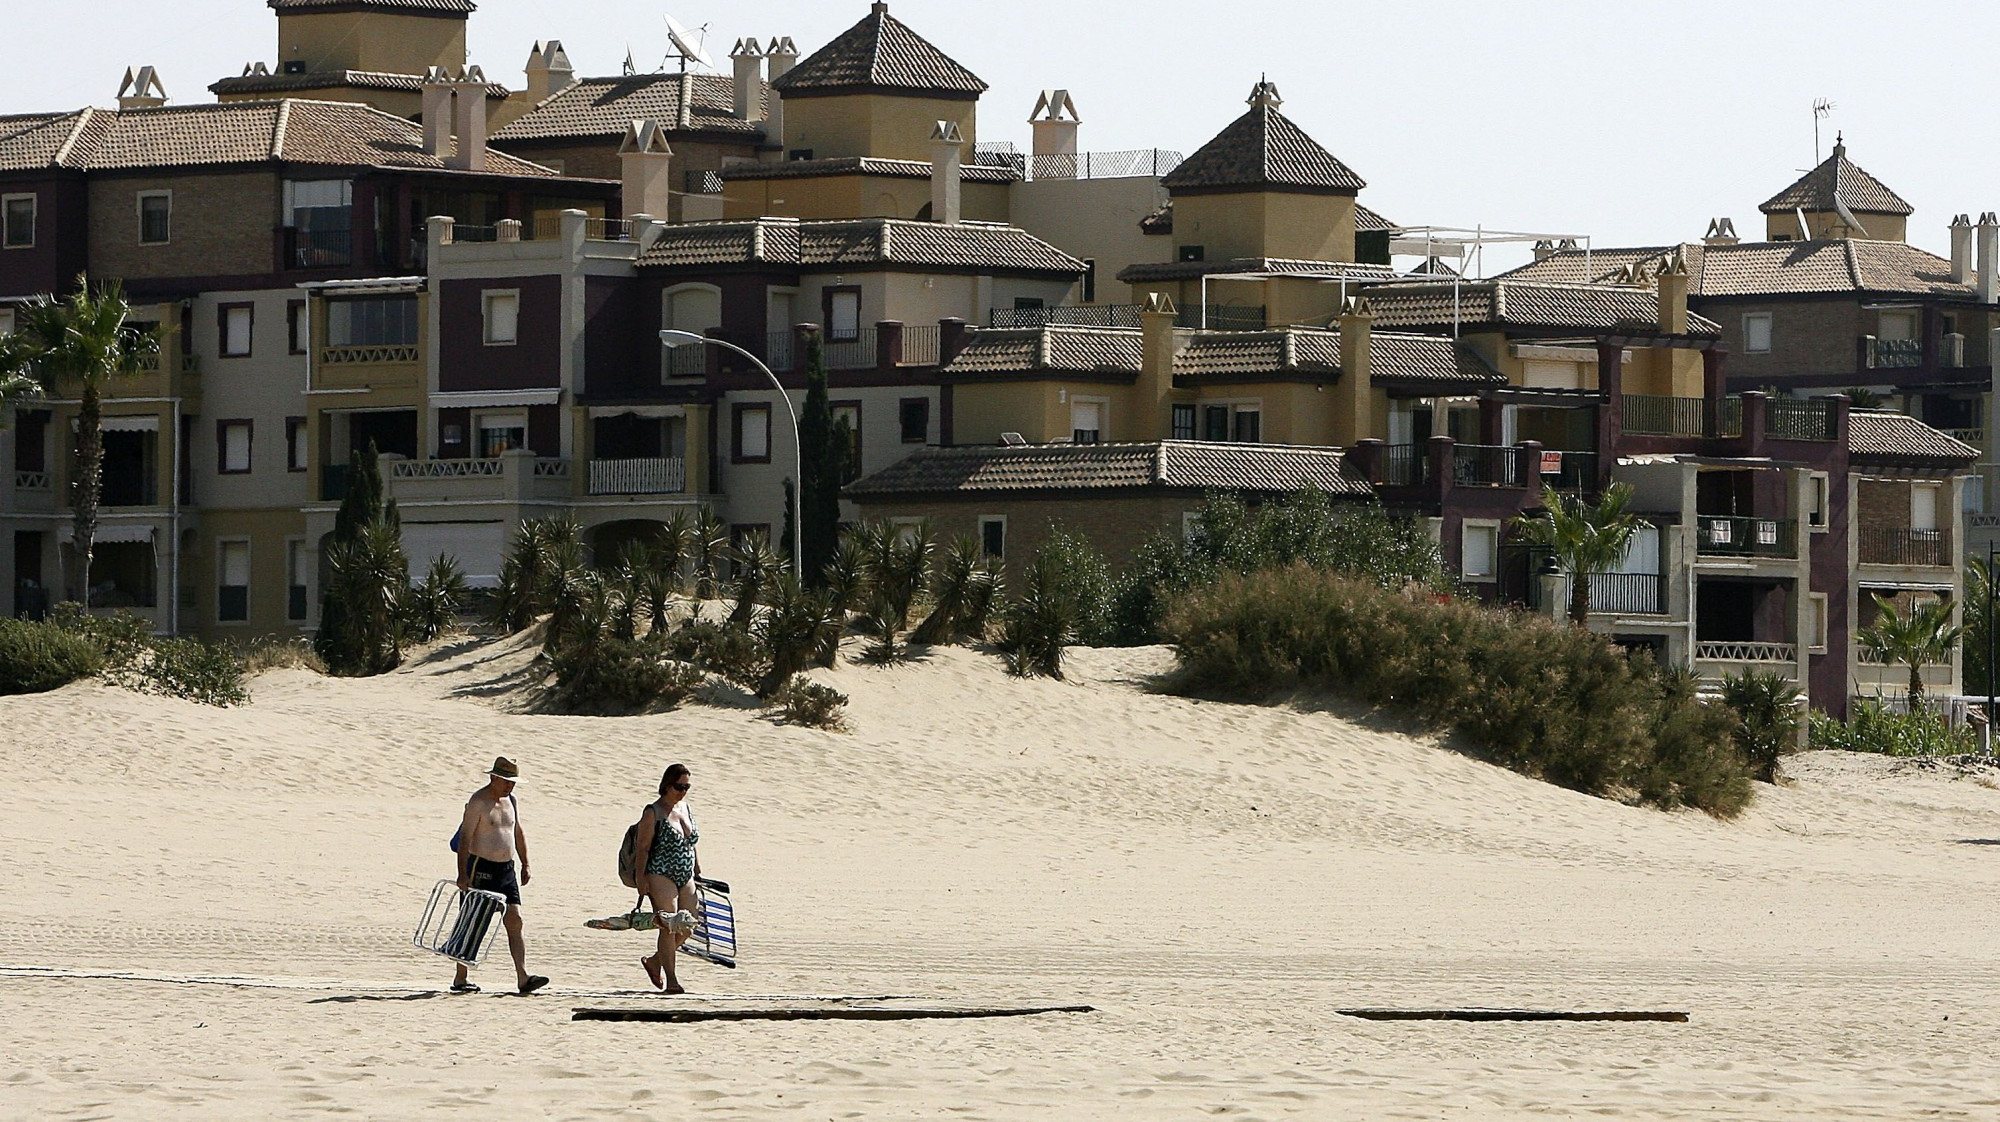 Em Espanha, o turismo representa cerca de 12% do PIB nacional